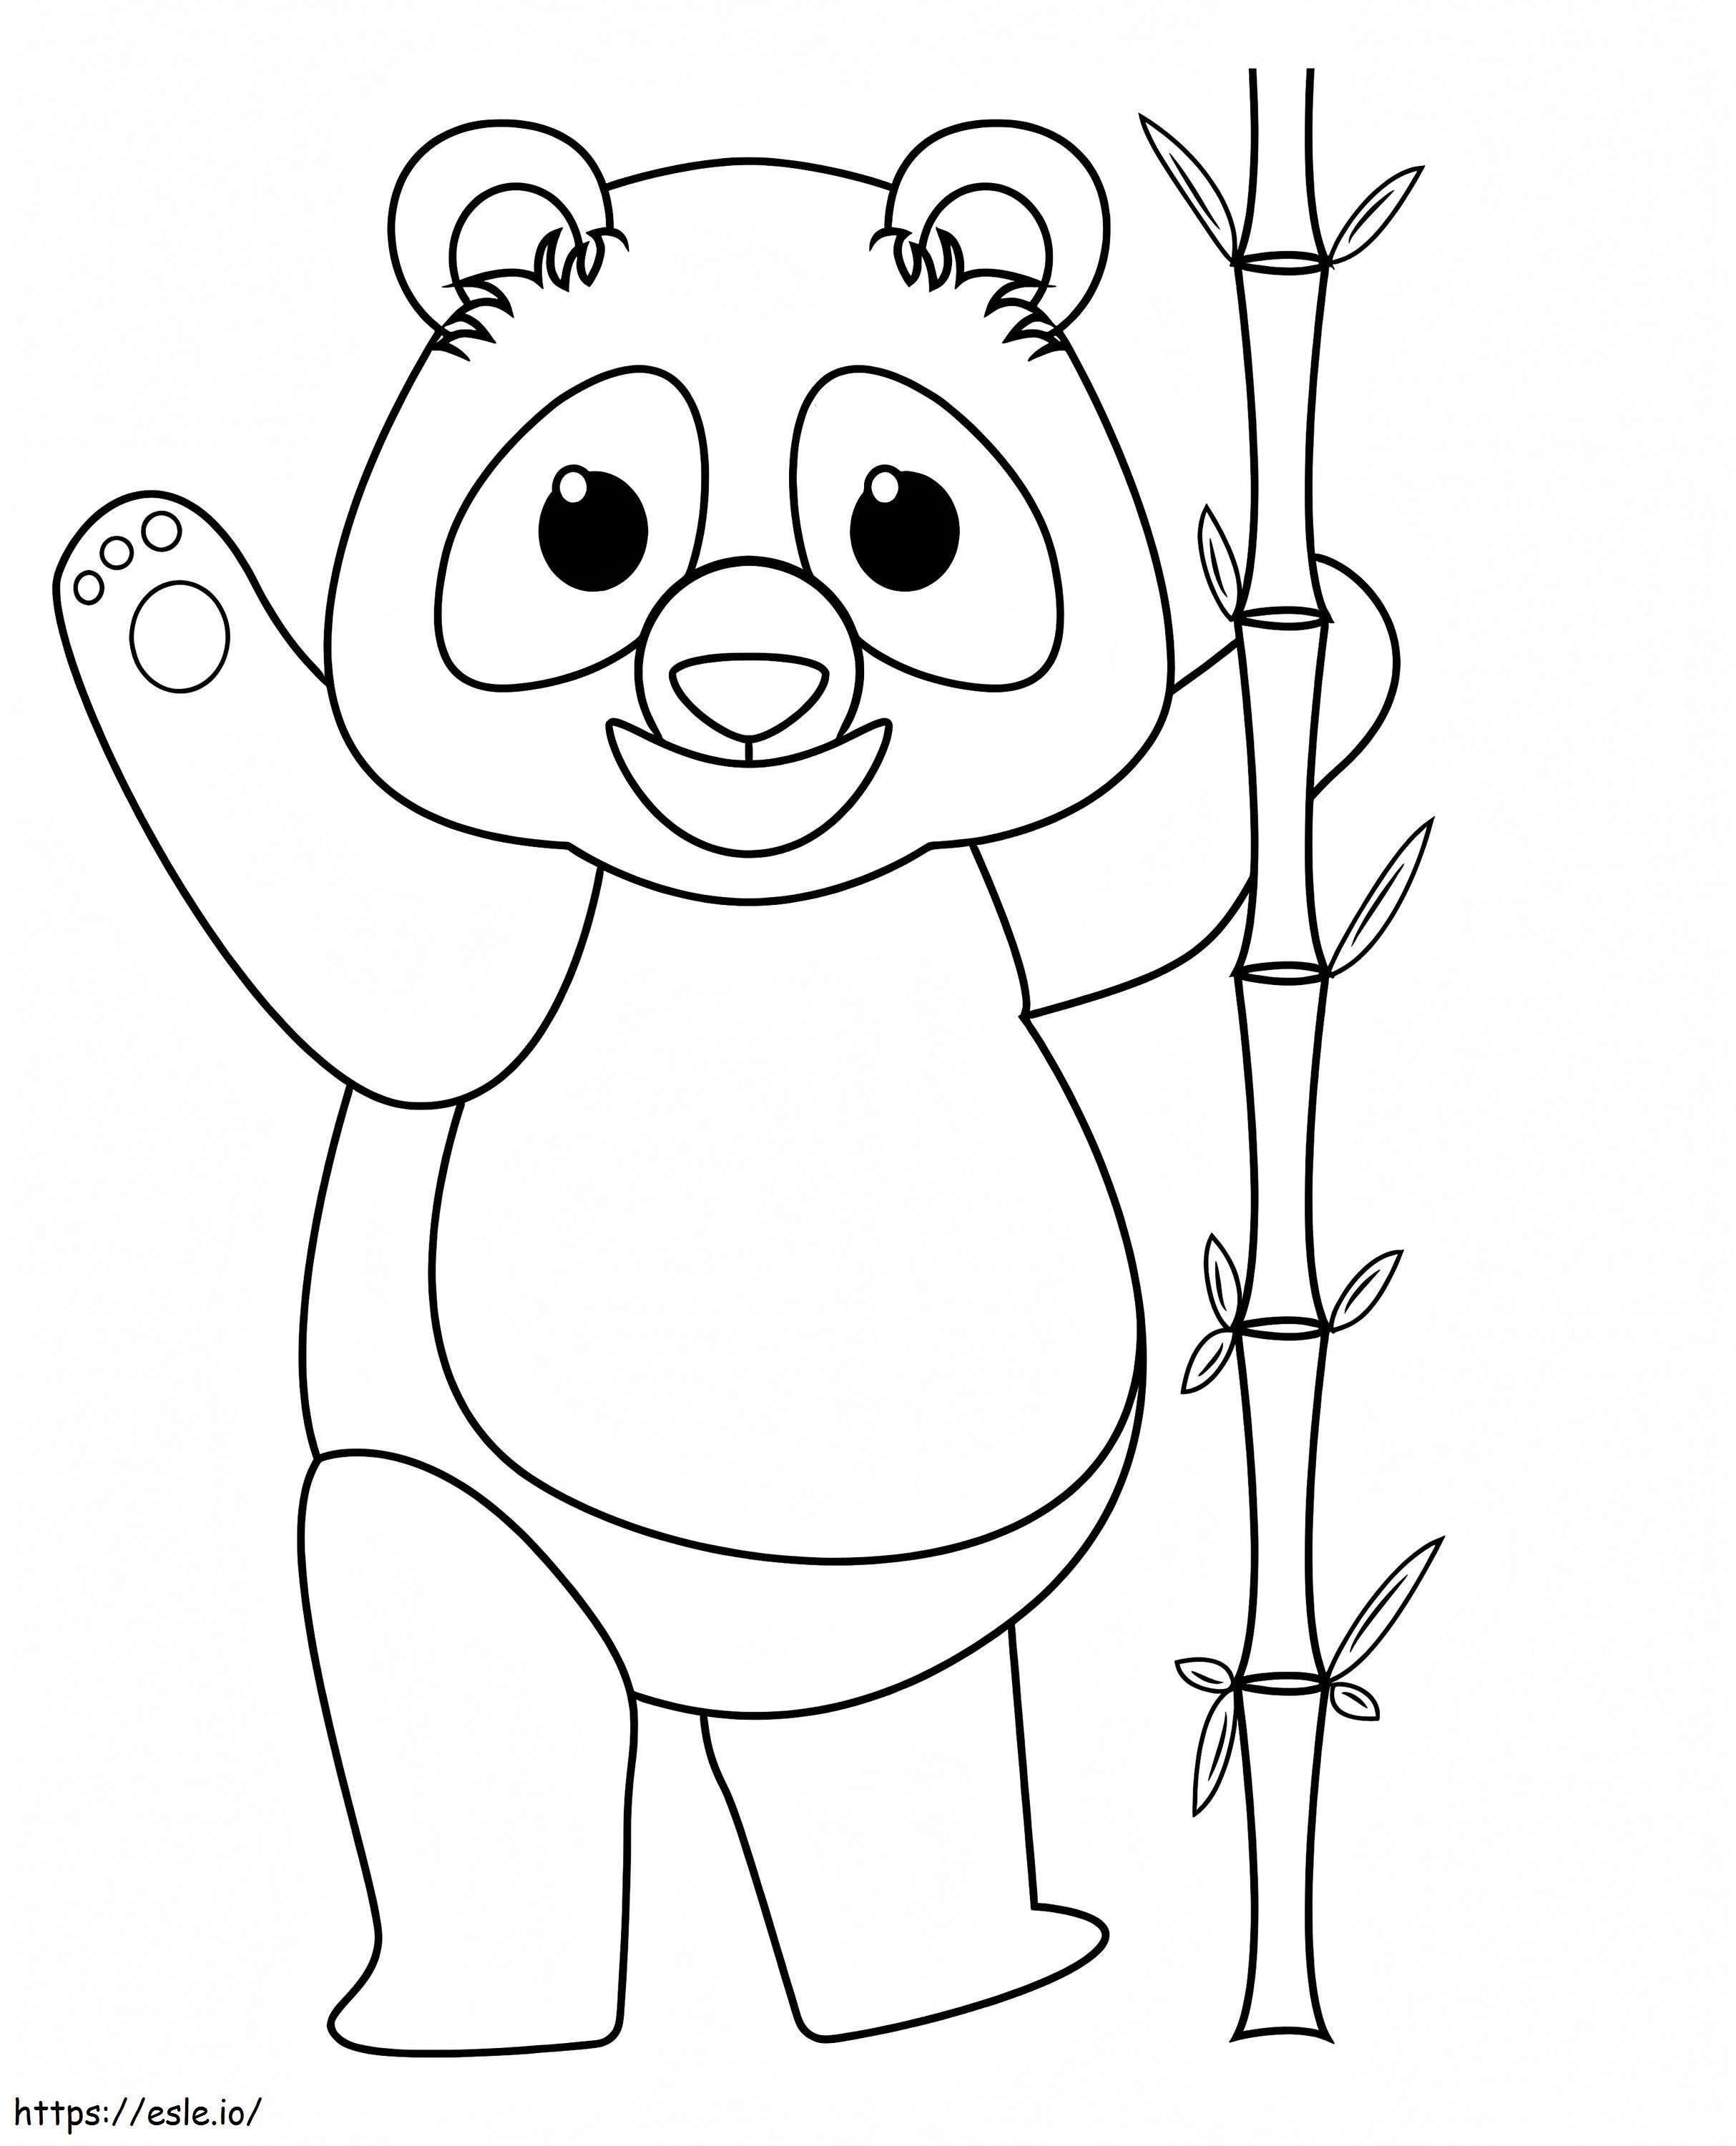 Coloriage heureux, dessin animé, panda à imprimer dessin